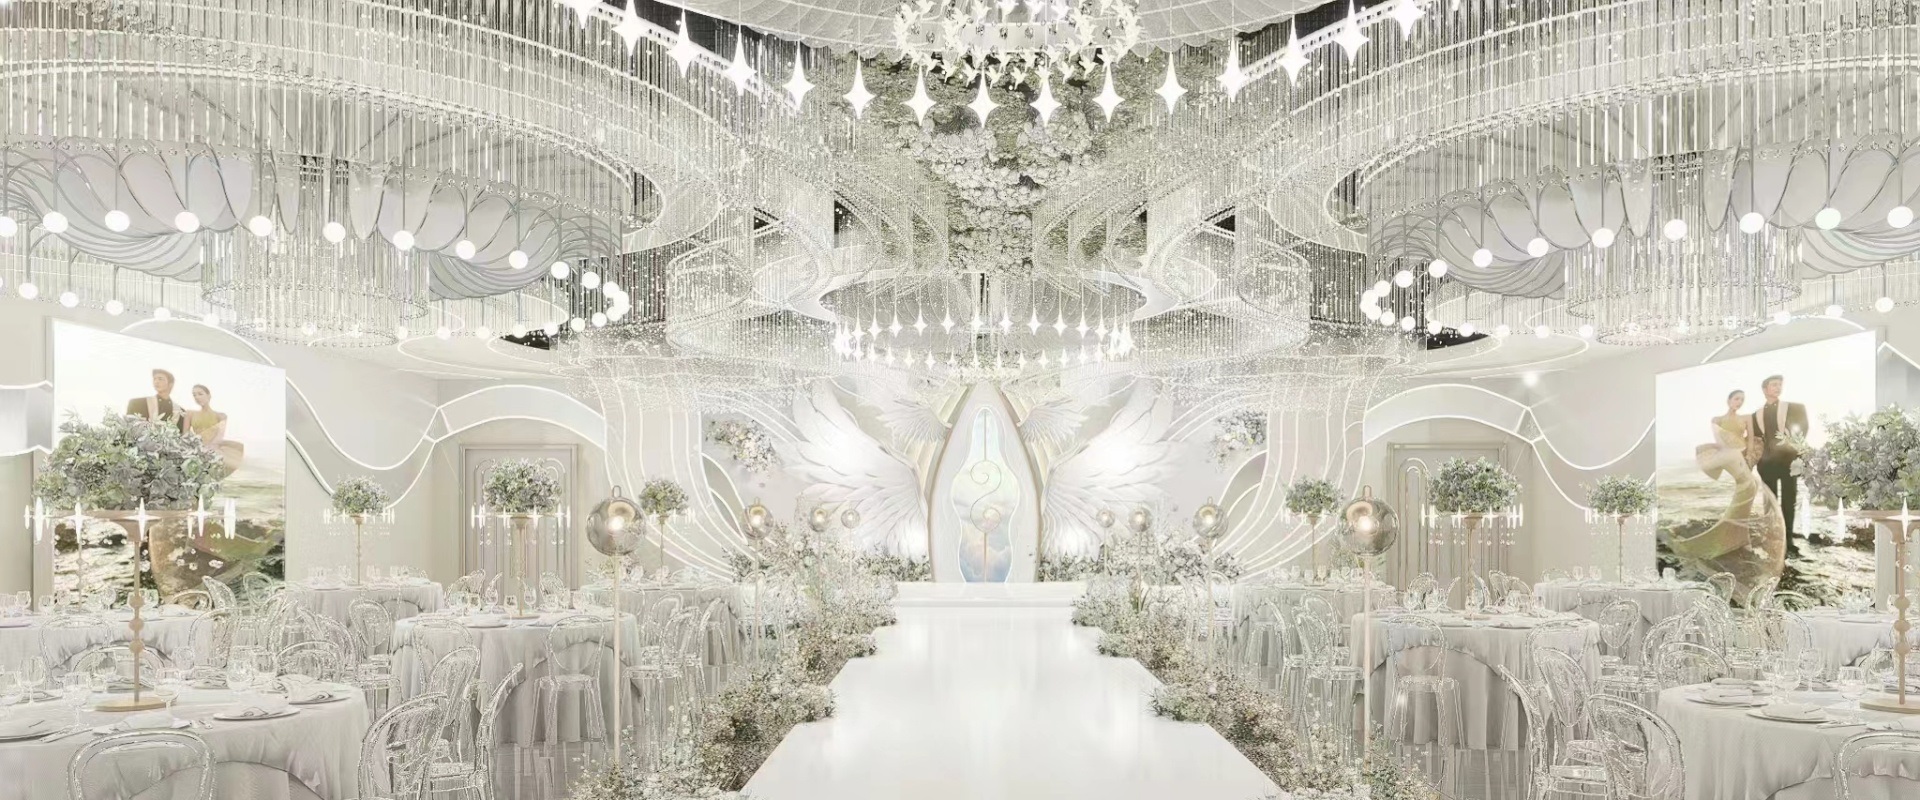 Dutti LED Modern Non-standard Chandelier Large Crystal Ceiling Pendant Lighting OEM custom for Wedding Ballroom Australia